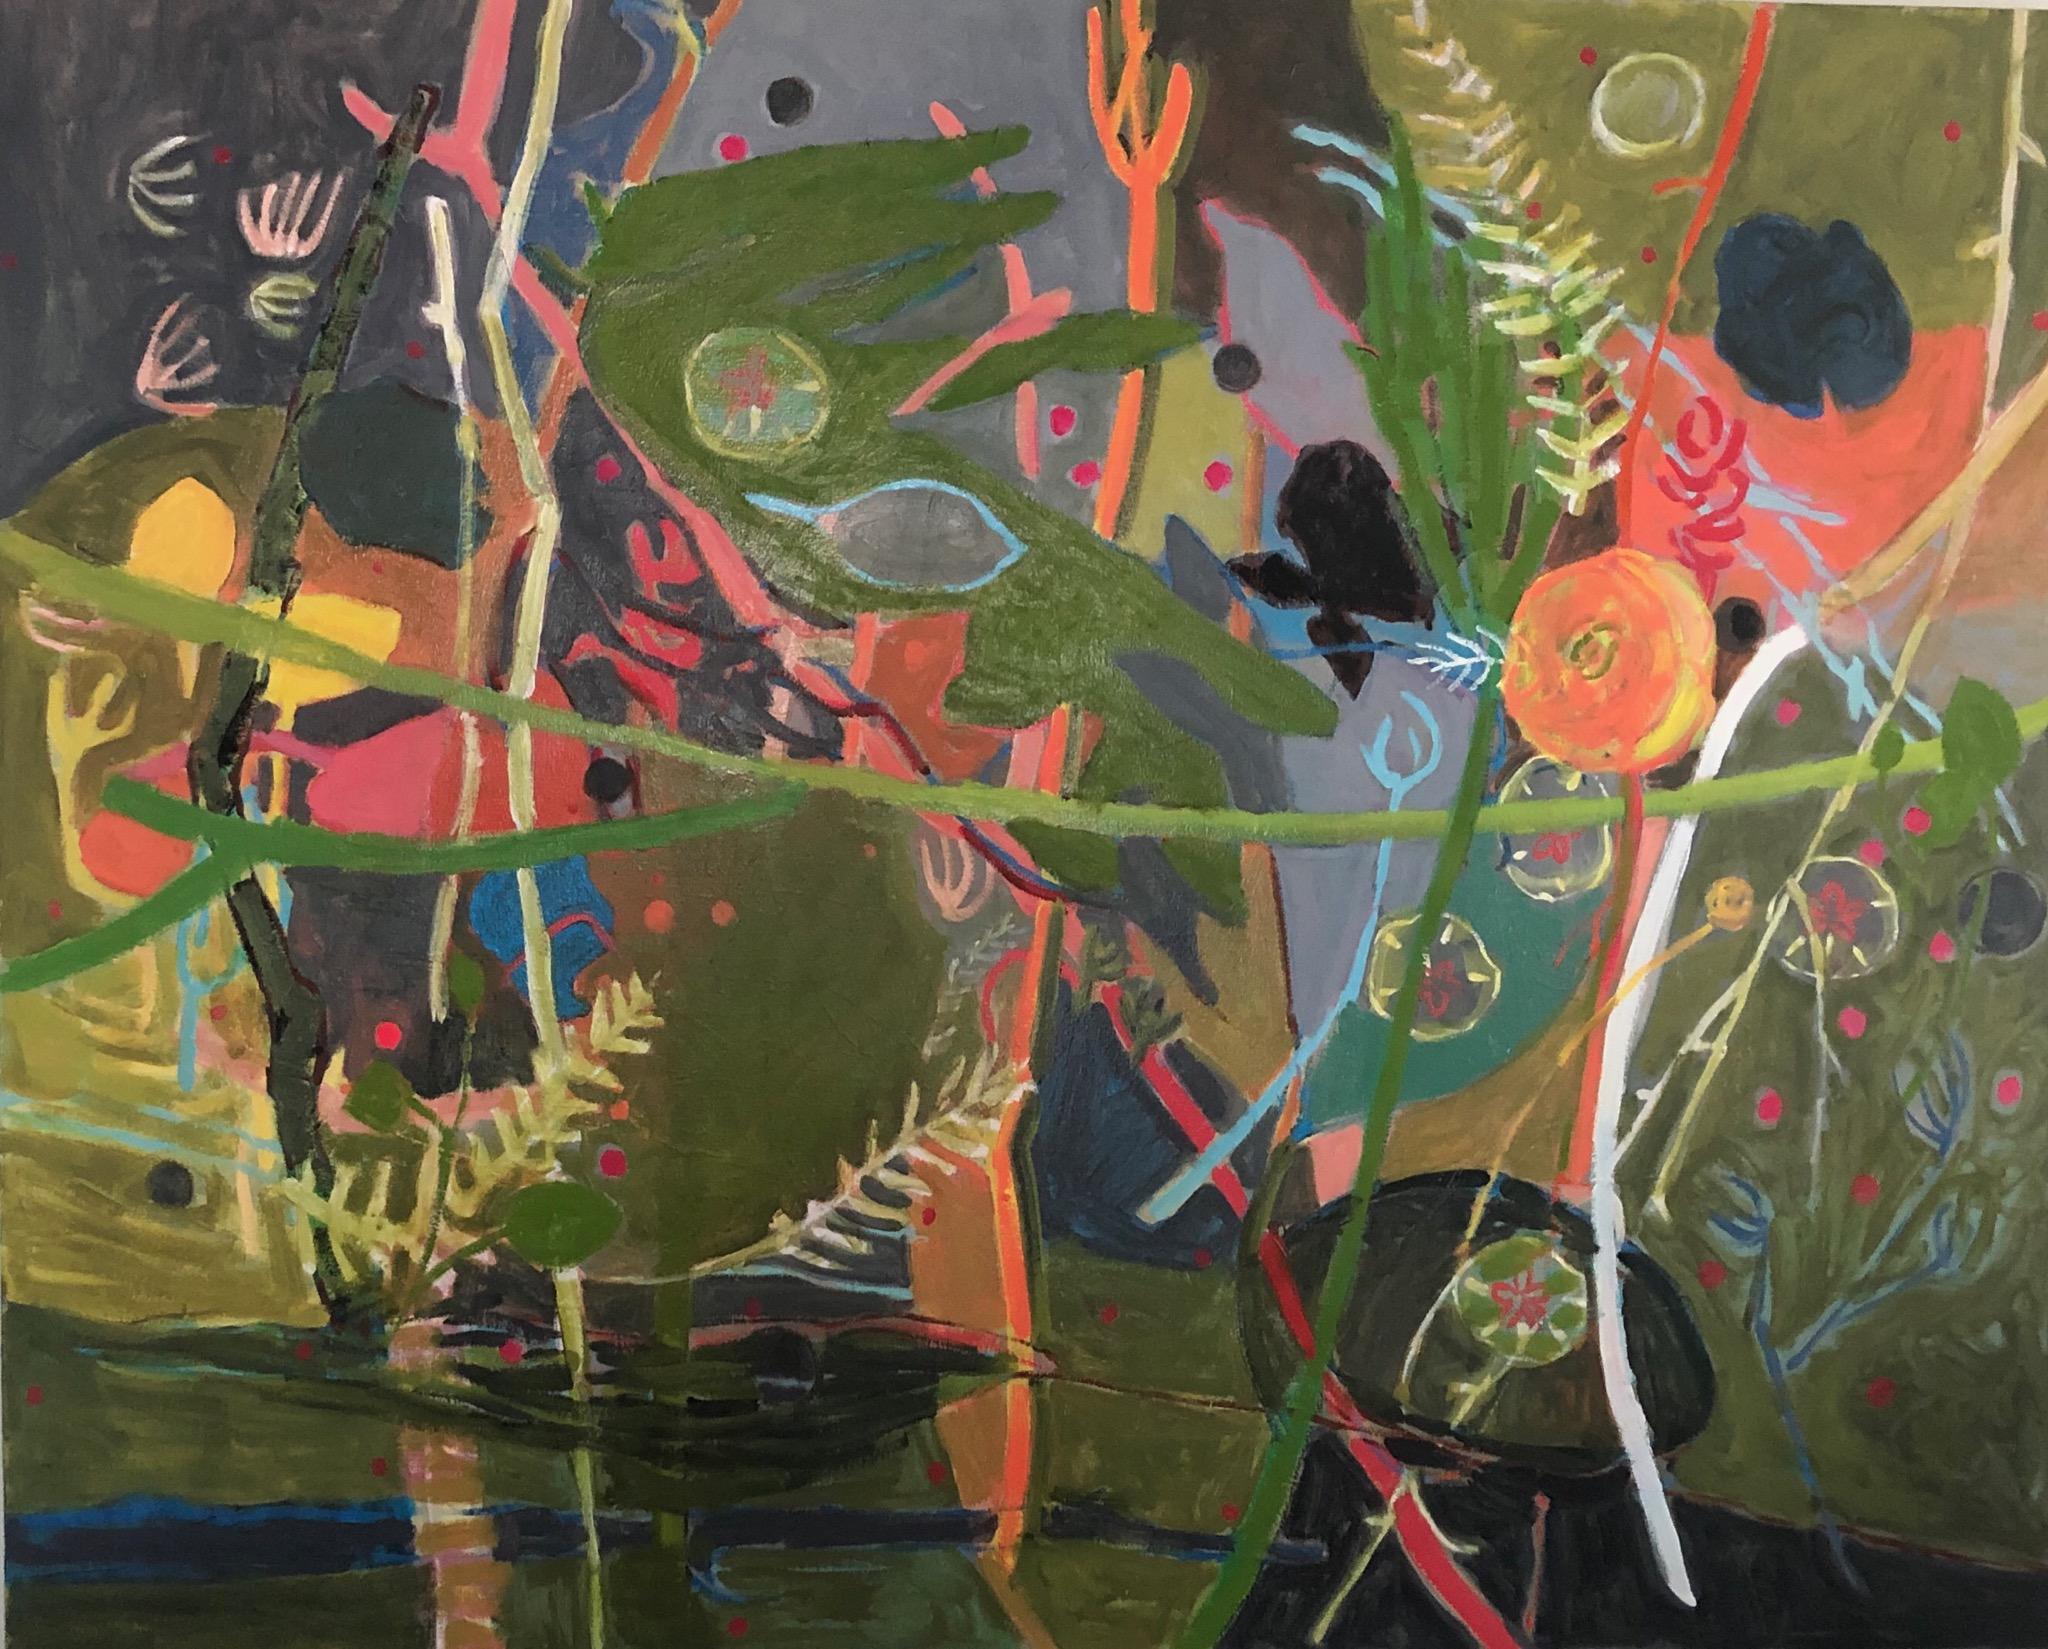  Abstrakter Expressionismus von Glen Rose,  Öl auf Leinwand, TX Künstler  Florale Farben